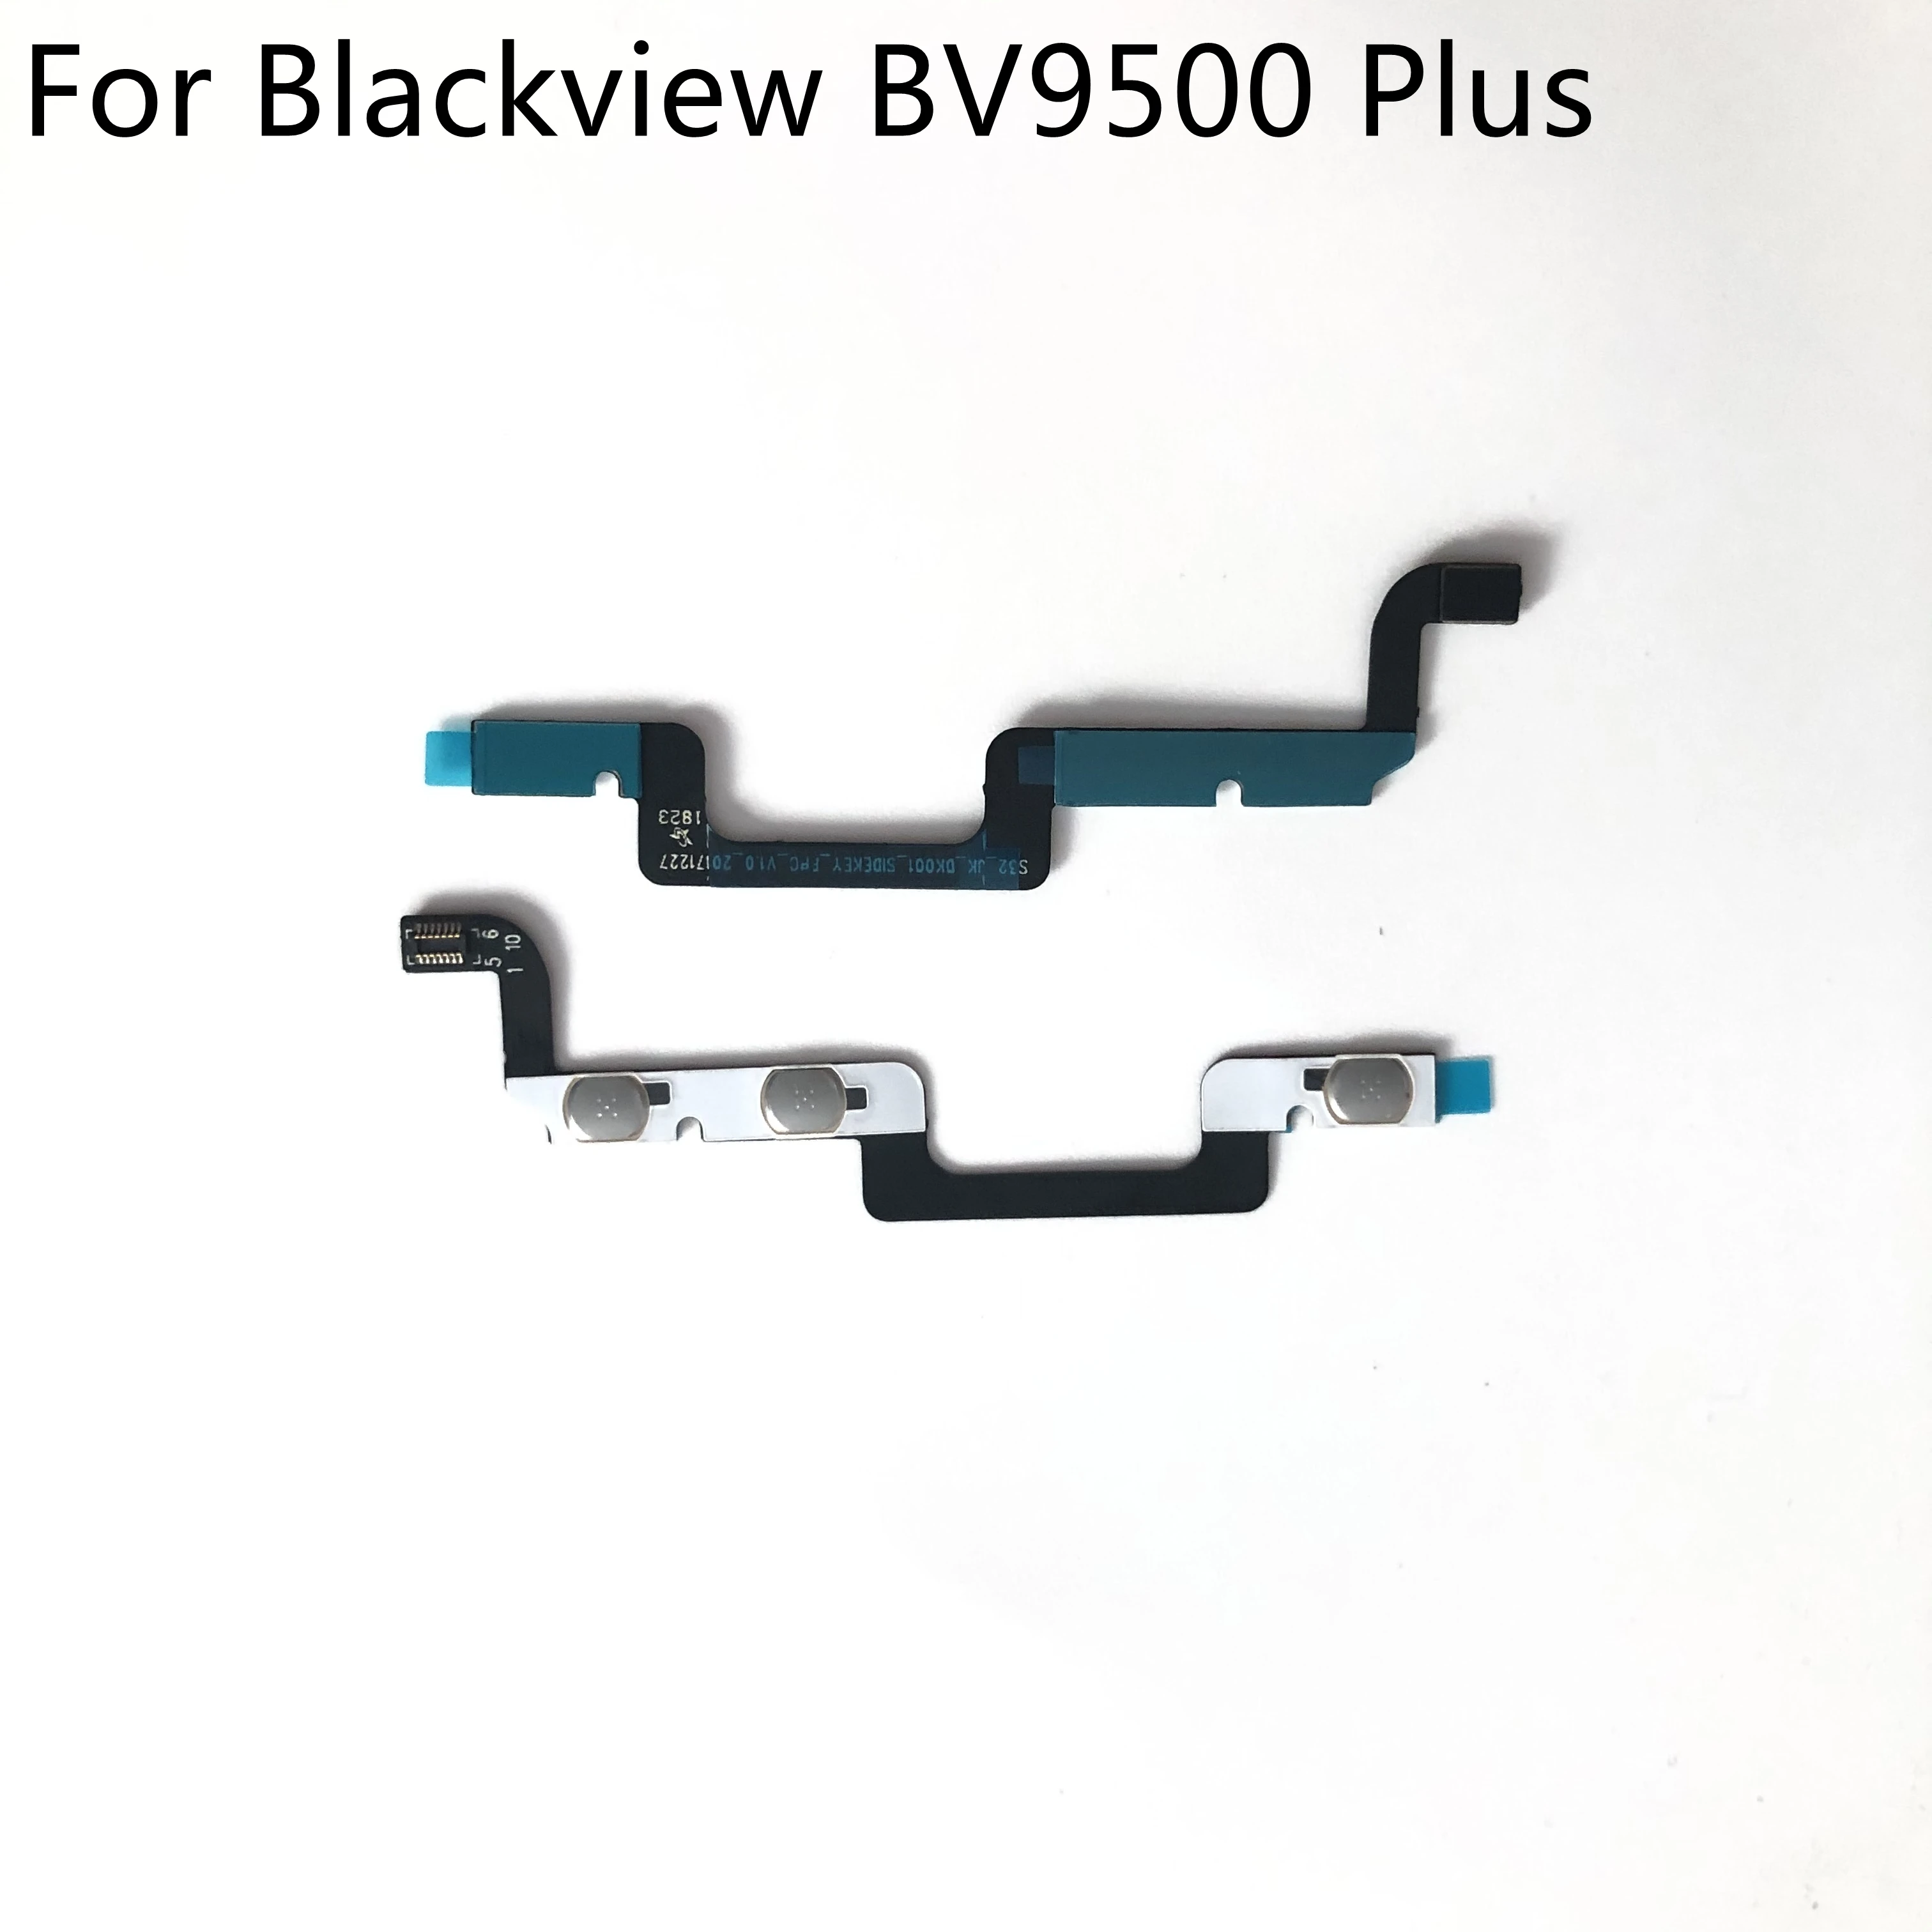 

New Original Volume Button + PTT Button Flex Cable FPC For Blackview BV9500 Plus Helio P70 5.7" 2160*1080 Smartphone